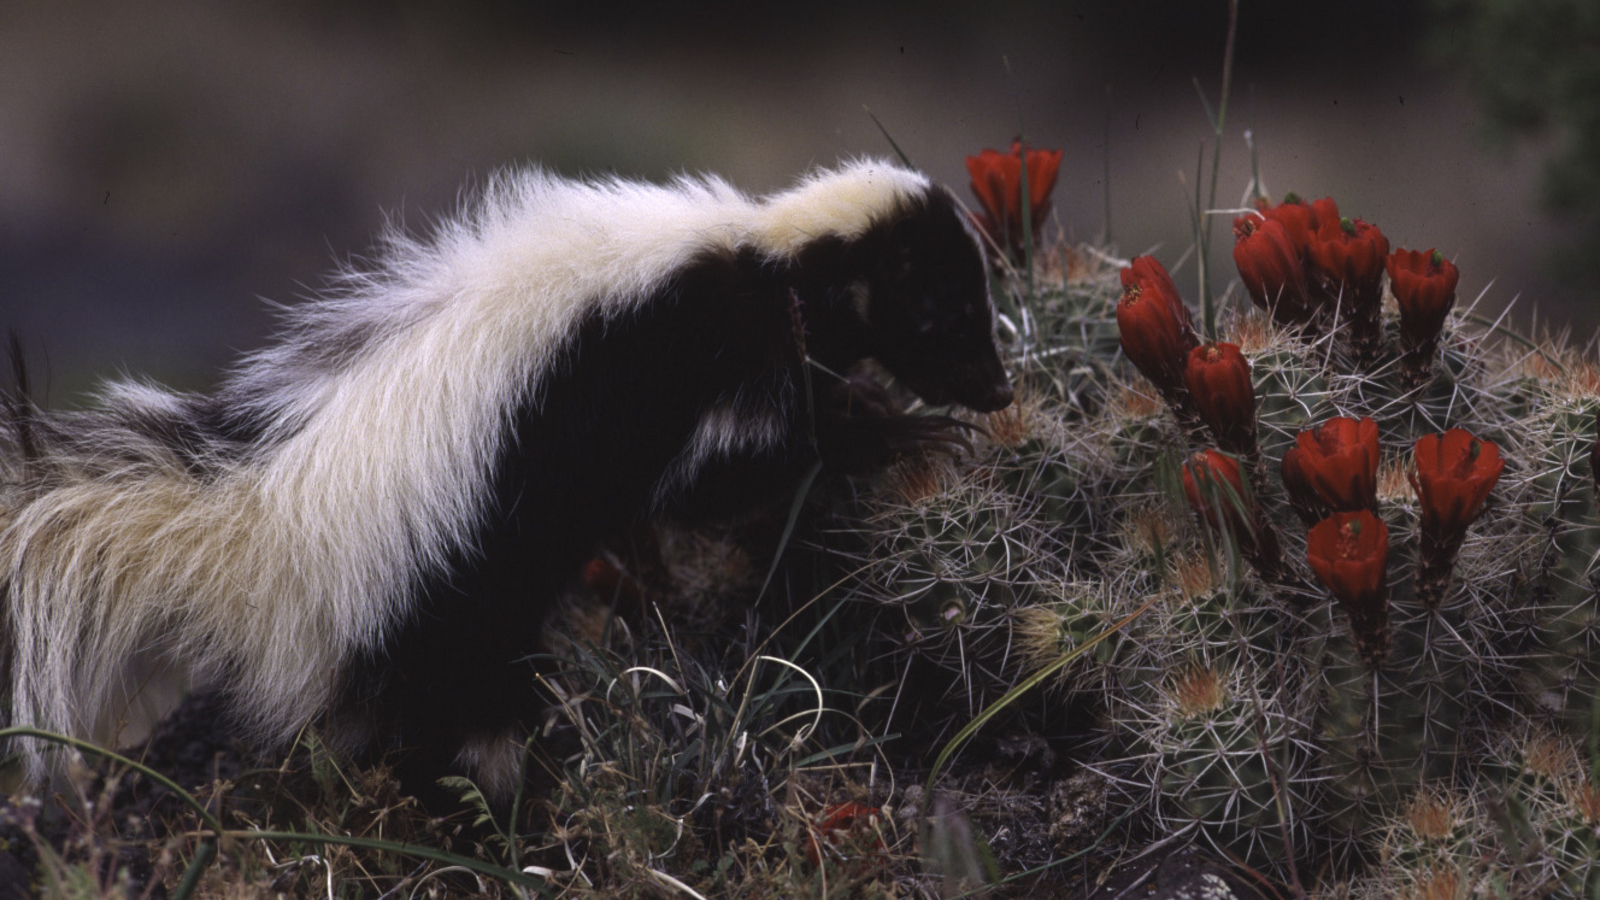 Skunk and cactus. Photo © Paul Berquist